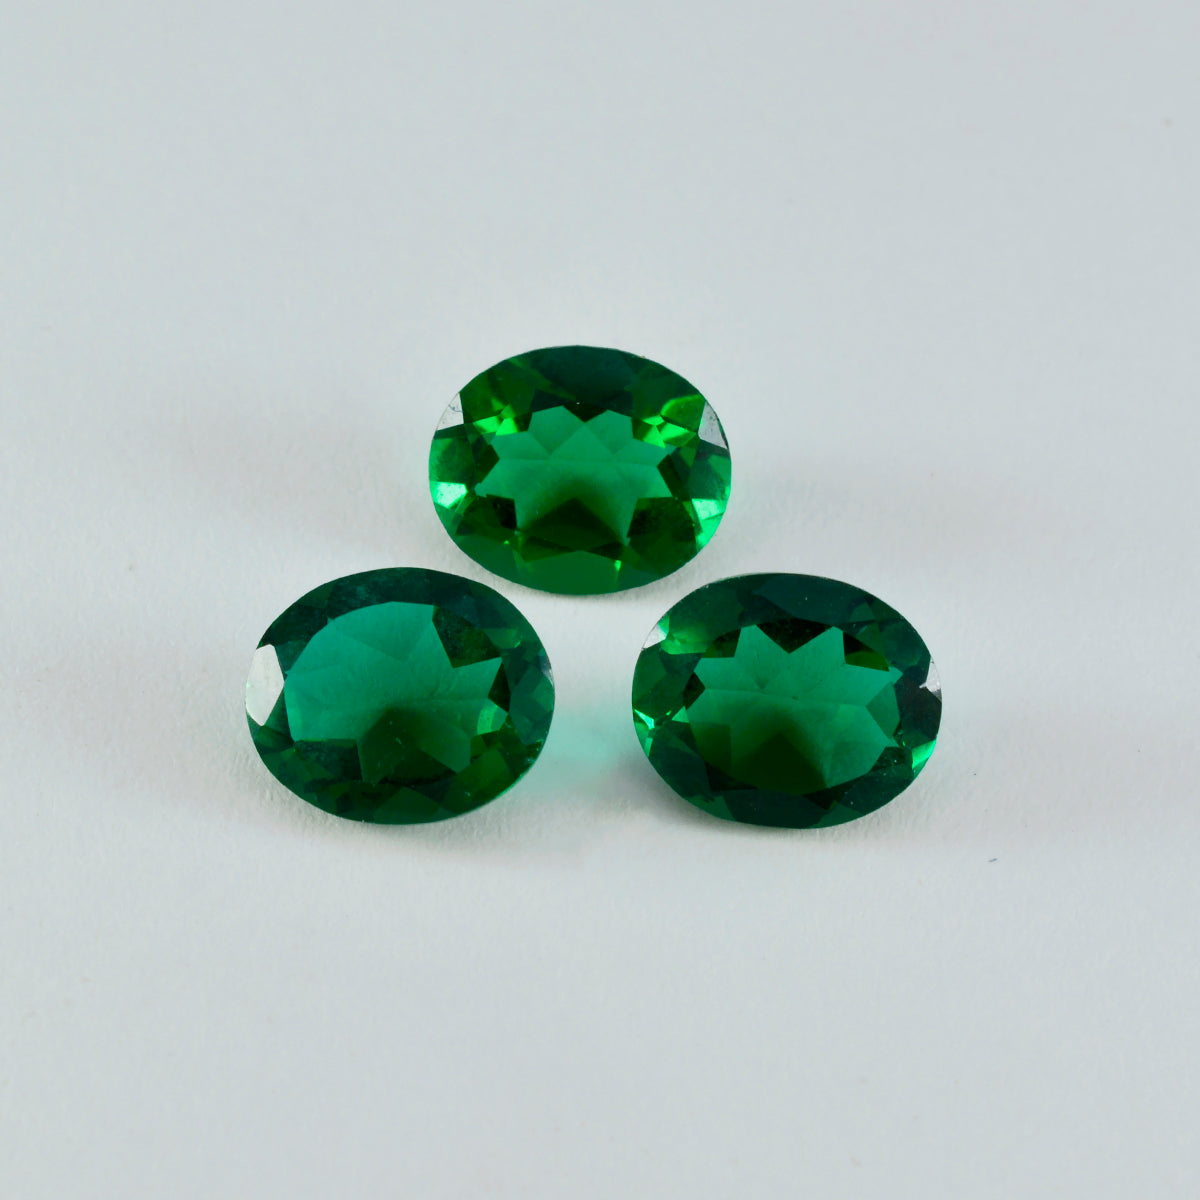 Riyogems 1 Stück grüner Smaragd, CZ, facettiert, 10 x 12 mm, ovale Form, Edelstein von ausgezeichneter Qualität